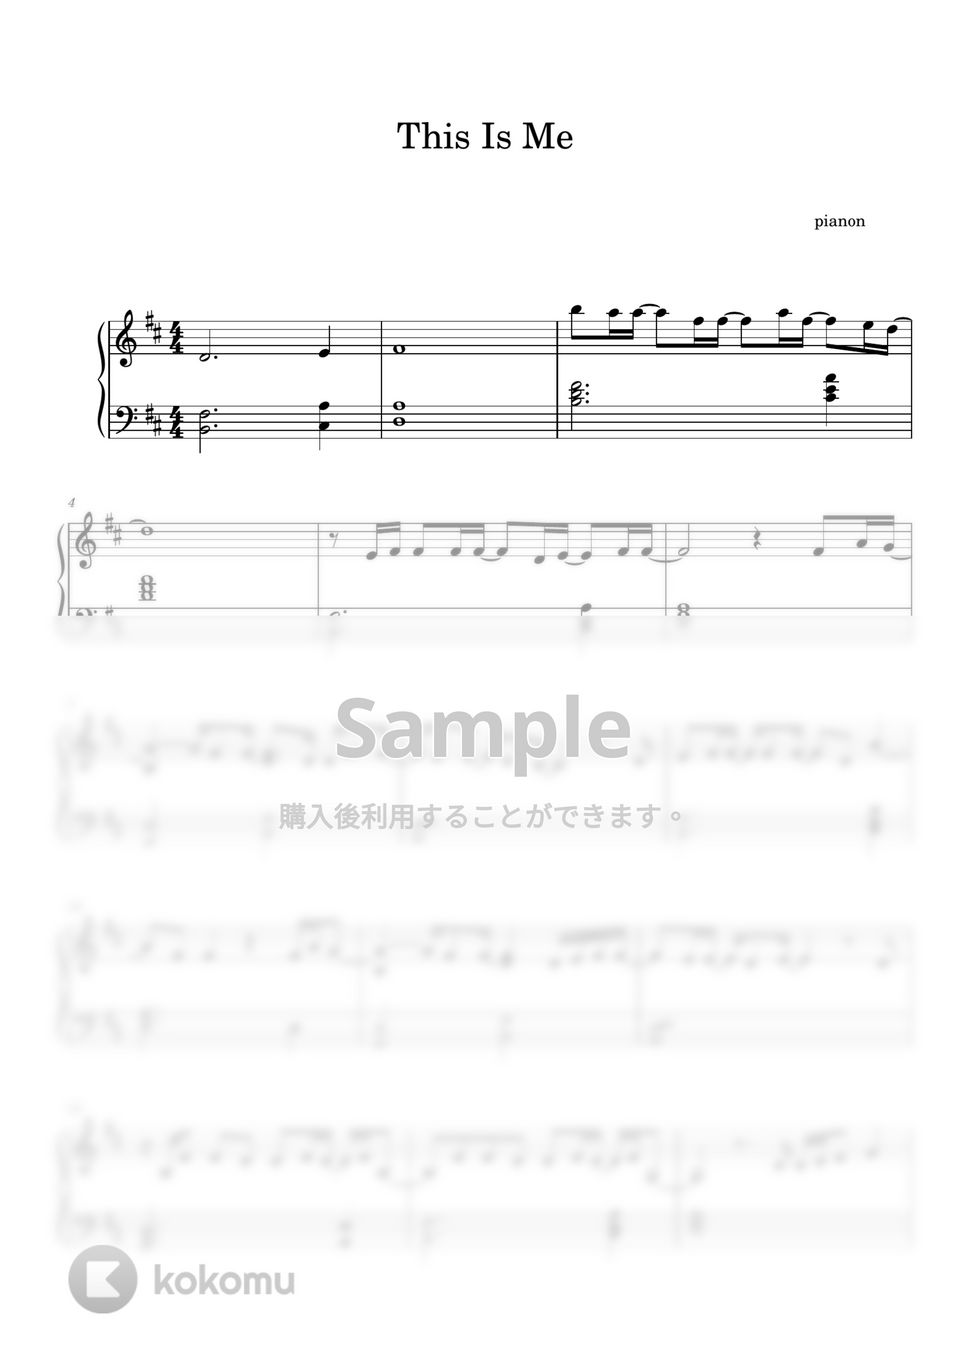 キアラ・セトル - This Is Me (ピアノ上級ソロ) by pianon